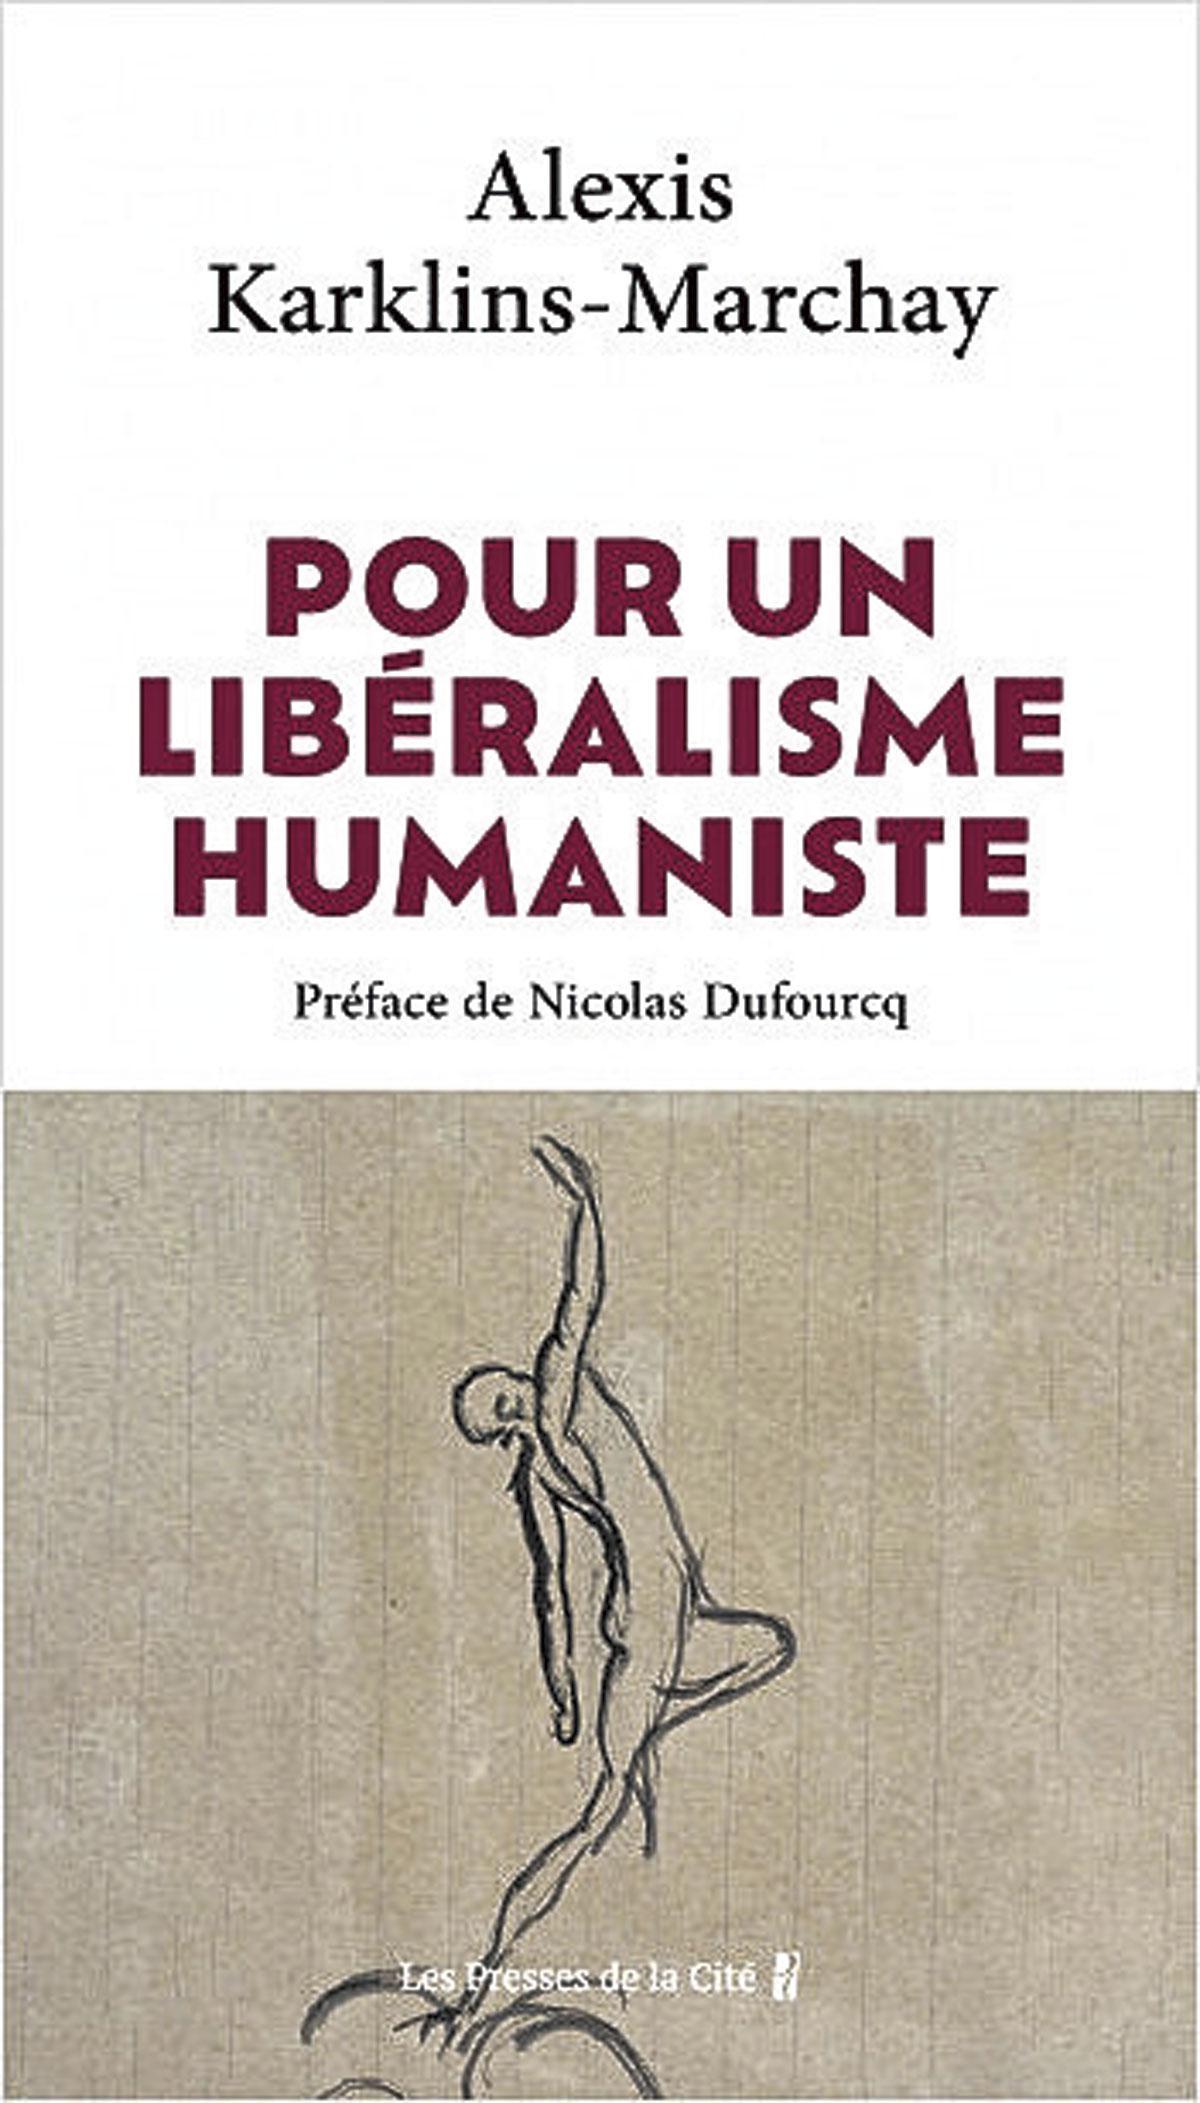 Alexis Karklins-Marchay, “Pour un libéralisme humaniste”, Les Presses de la Cité, 336 pages, 22 euros.